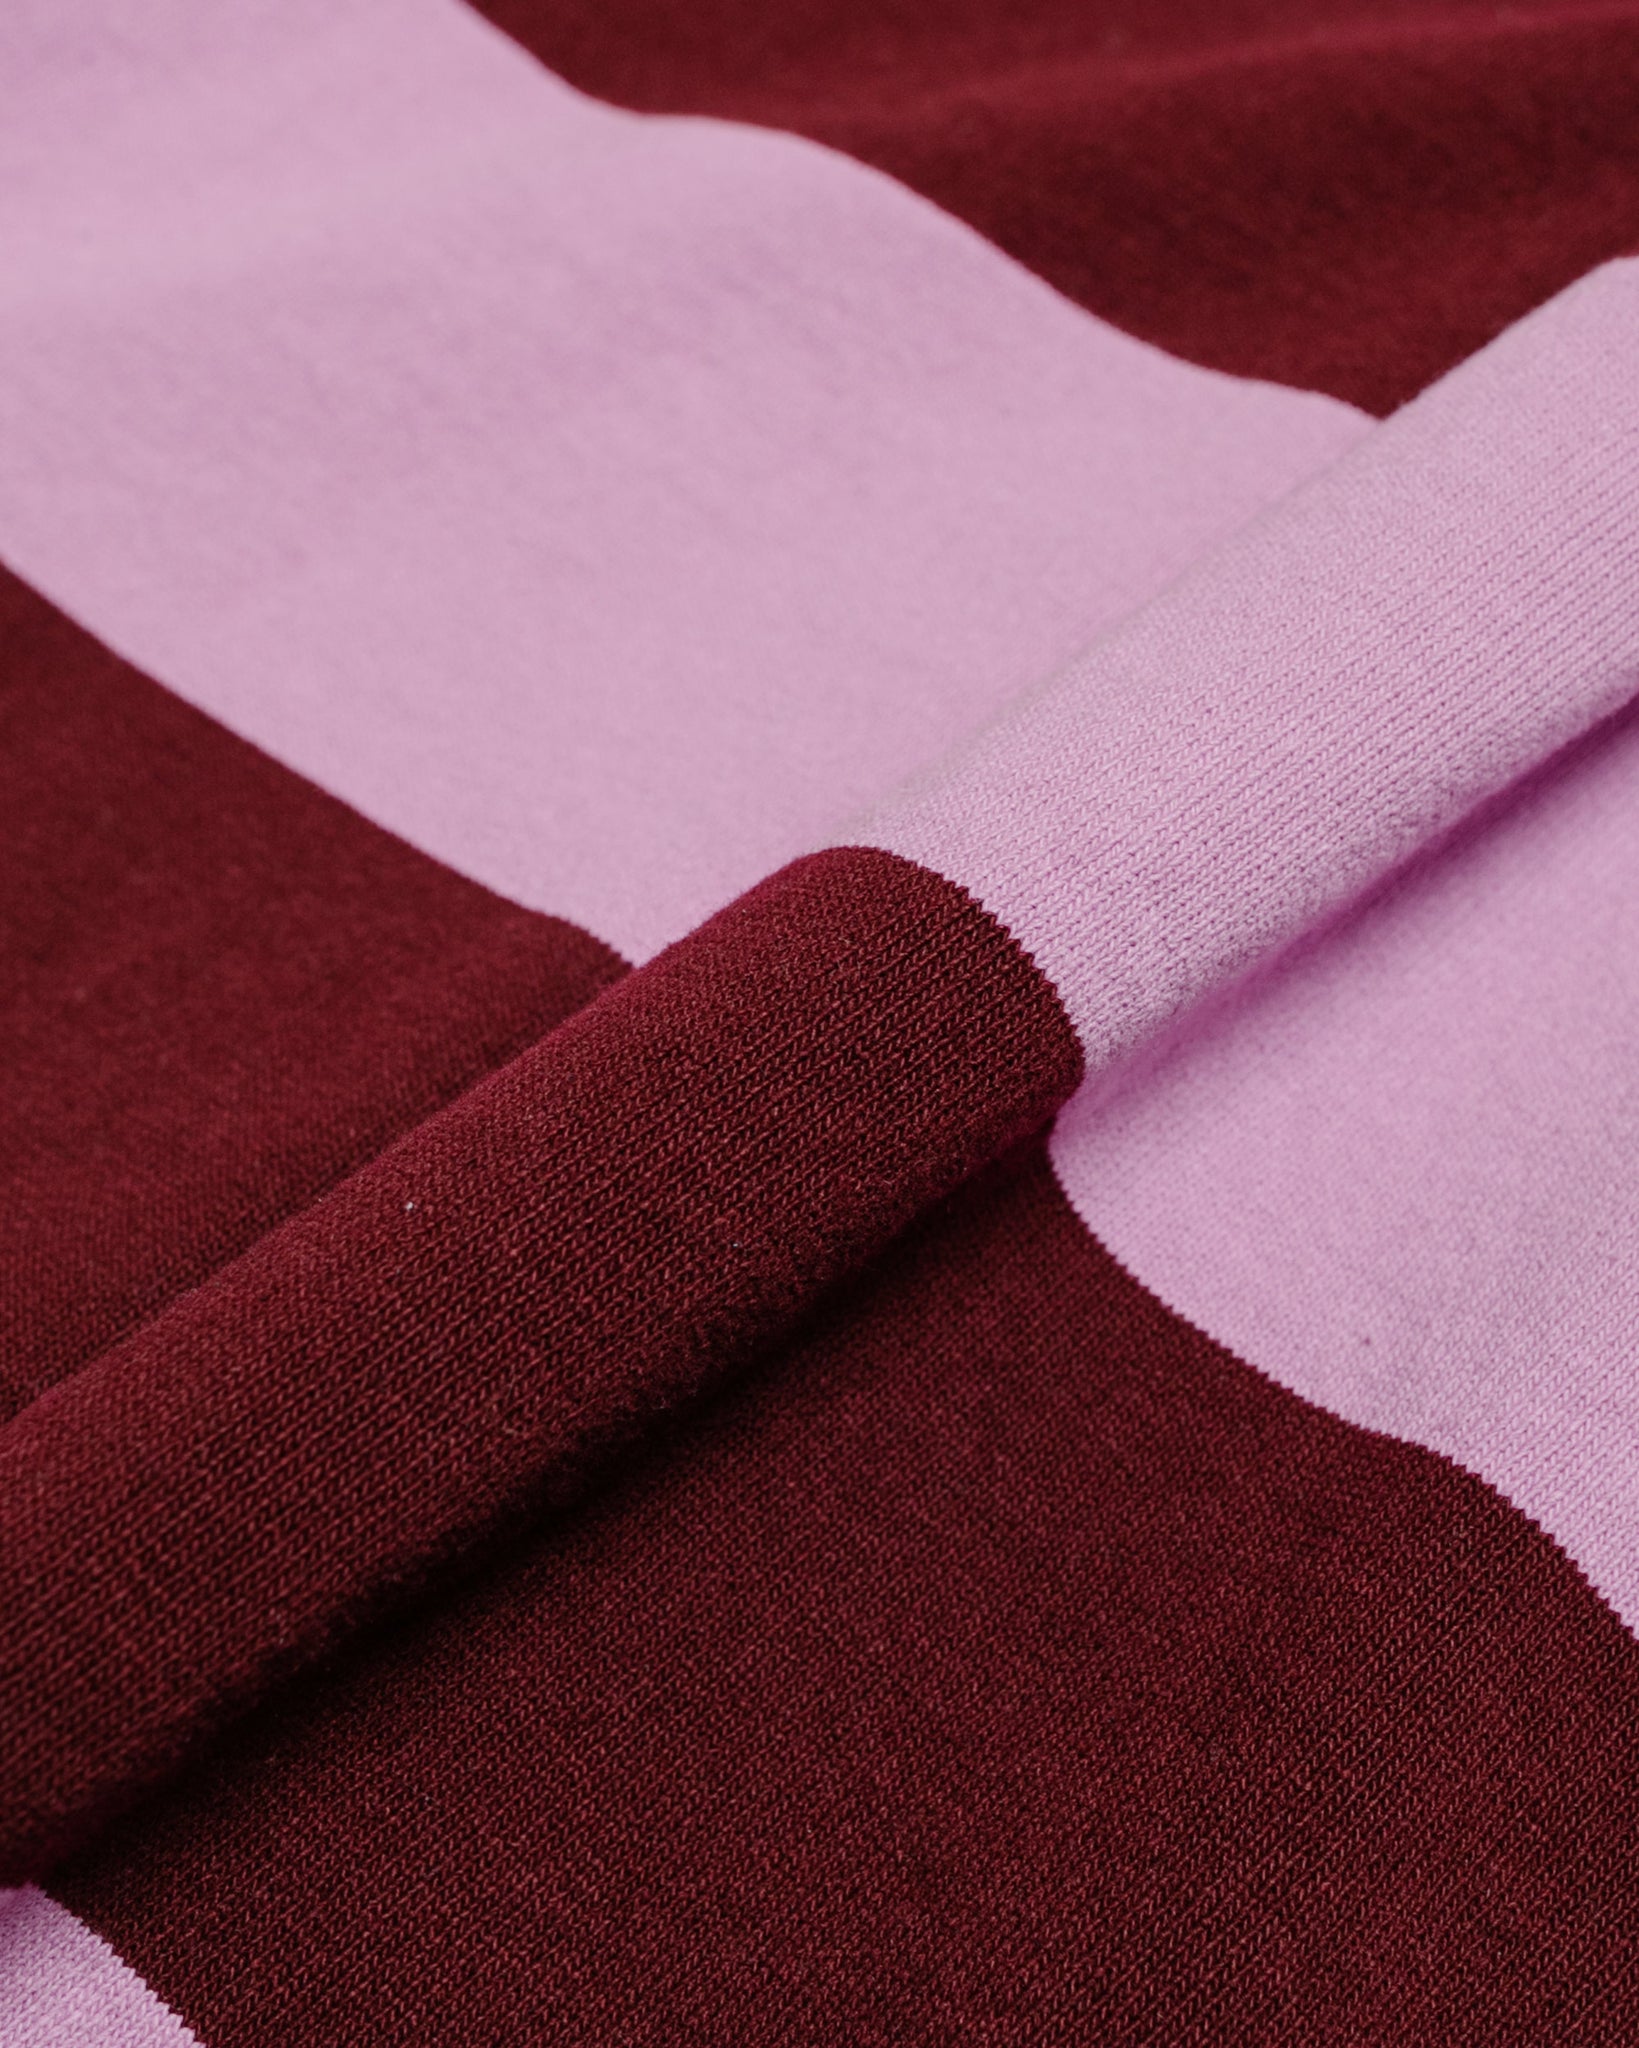 Lost & Found Classic Cardigan Harvard/Lavender fabric